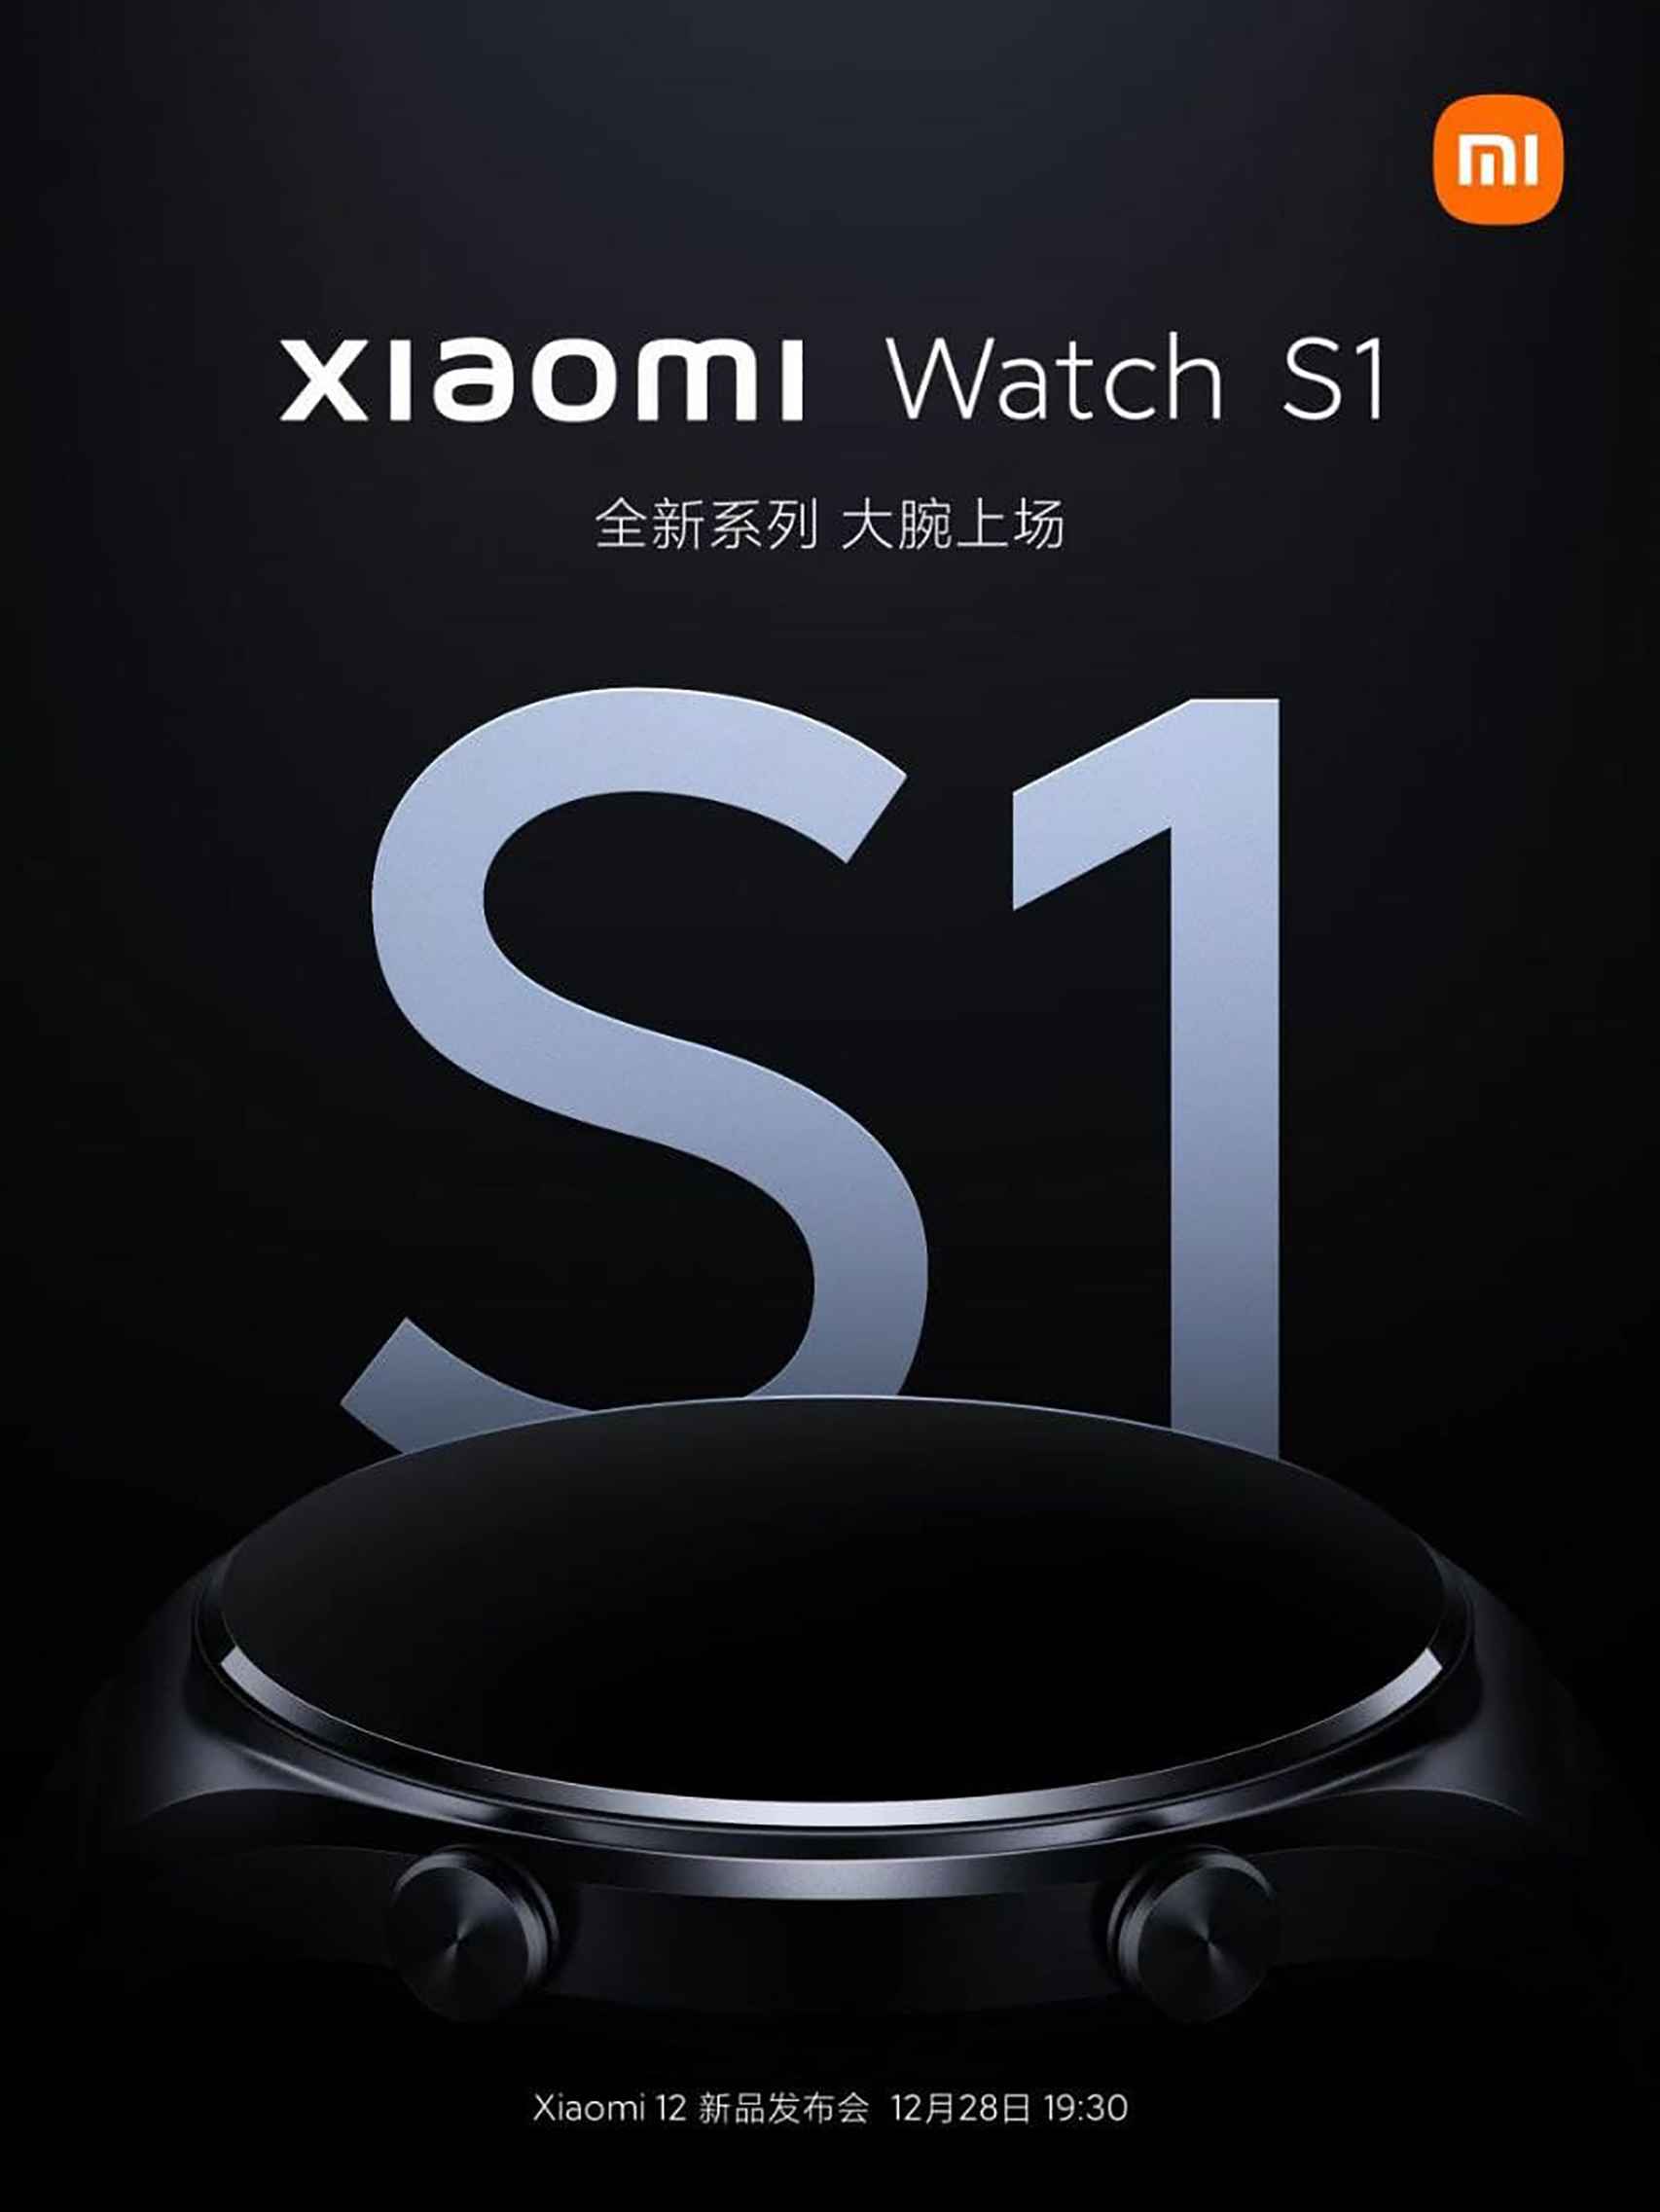 El Xiaomi Watch S1 se presentará el 28 diciembre para acompañar al Xiaomi  12 y MIUI 13